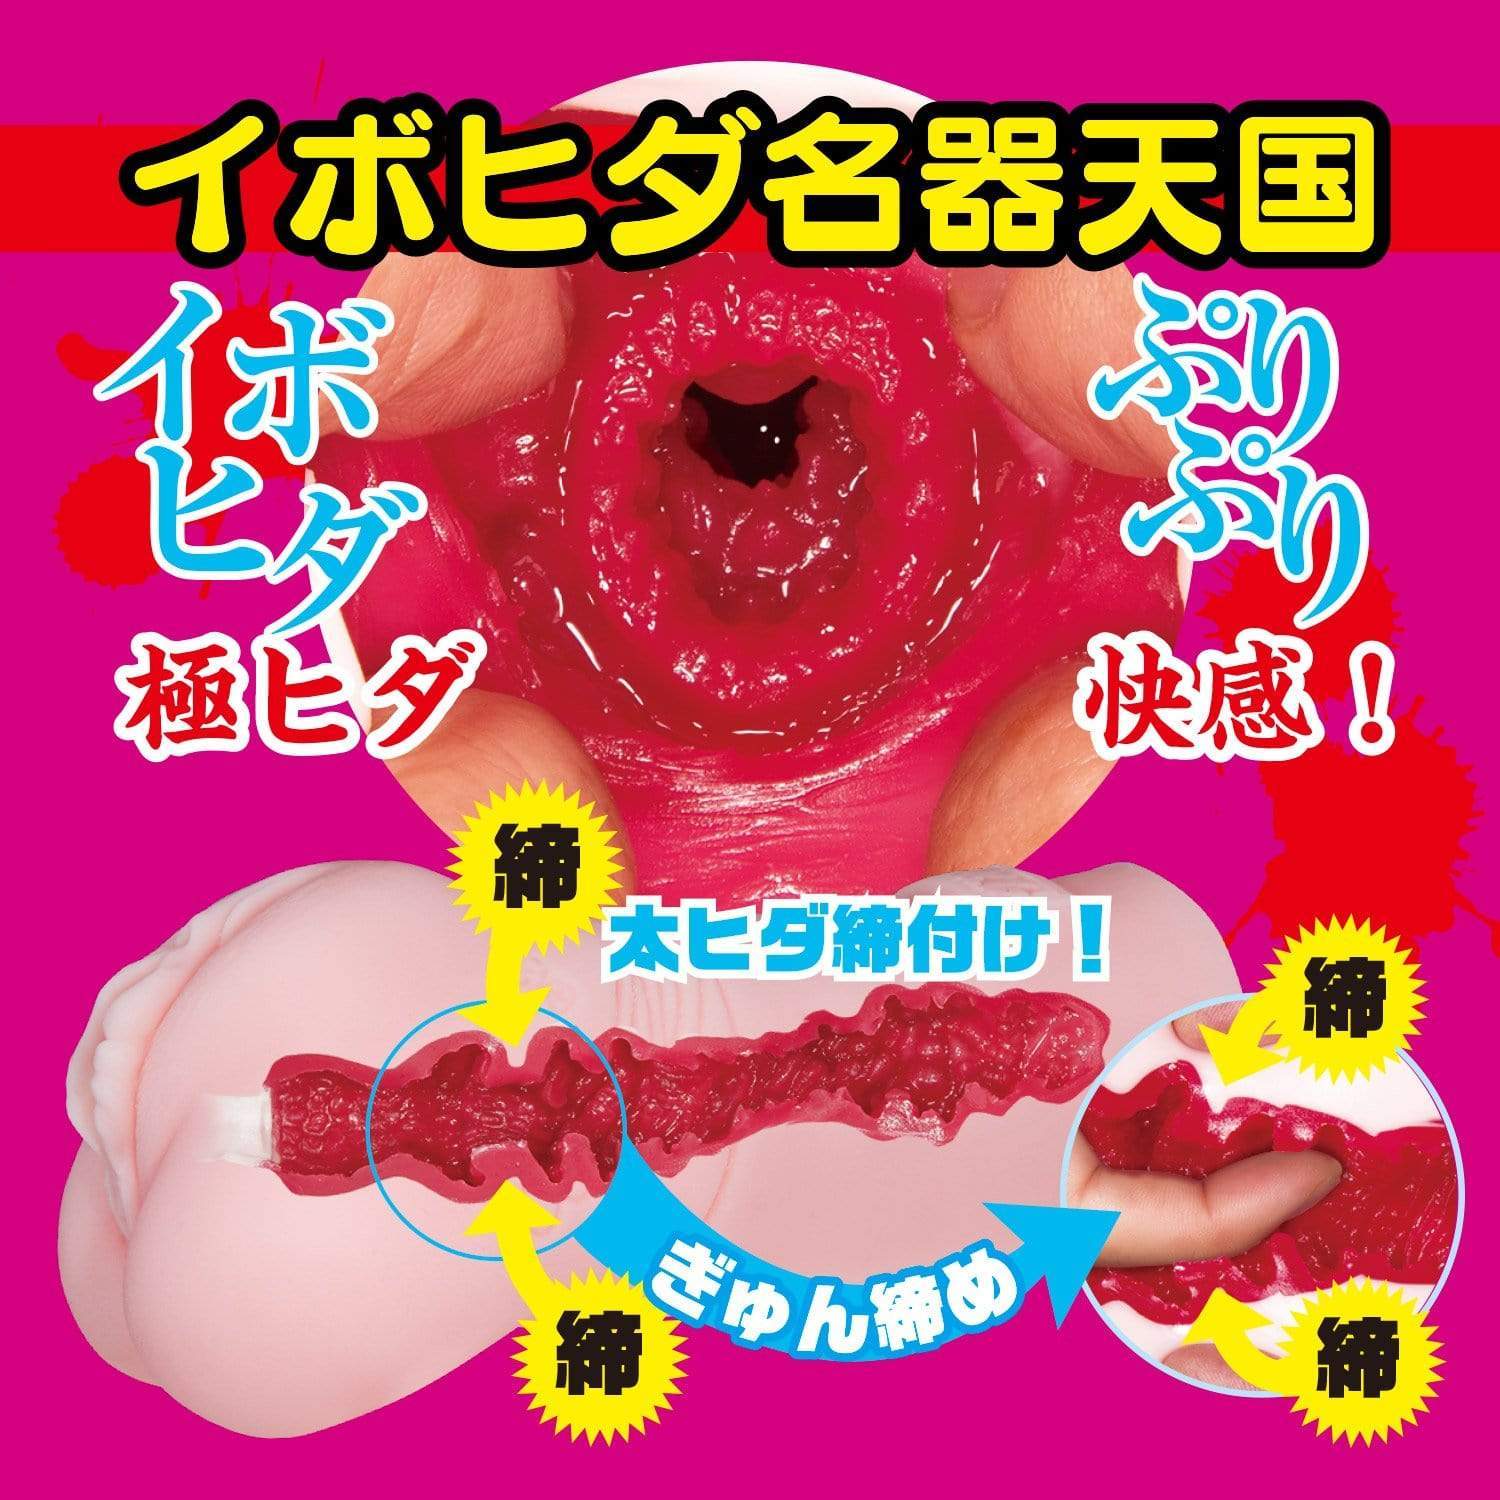 NPG - Erotic Treatment of Filthy Nurse Sarina Kurokawa Onahole (Beige) Masturbator Vagina (Non Vibration) 4562160137966 CherryAffairs